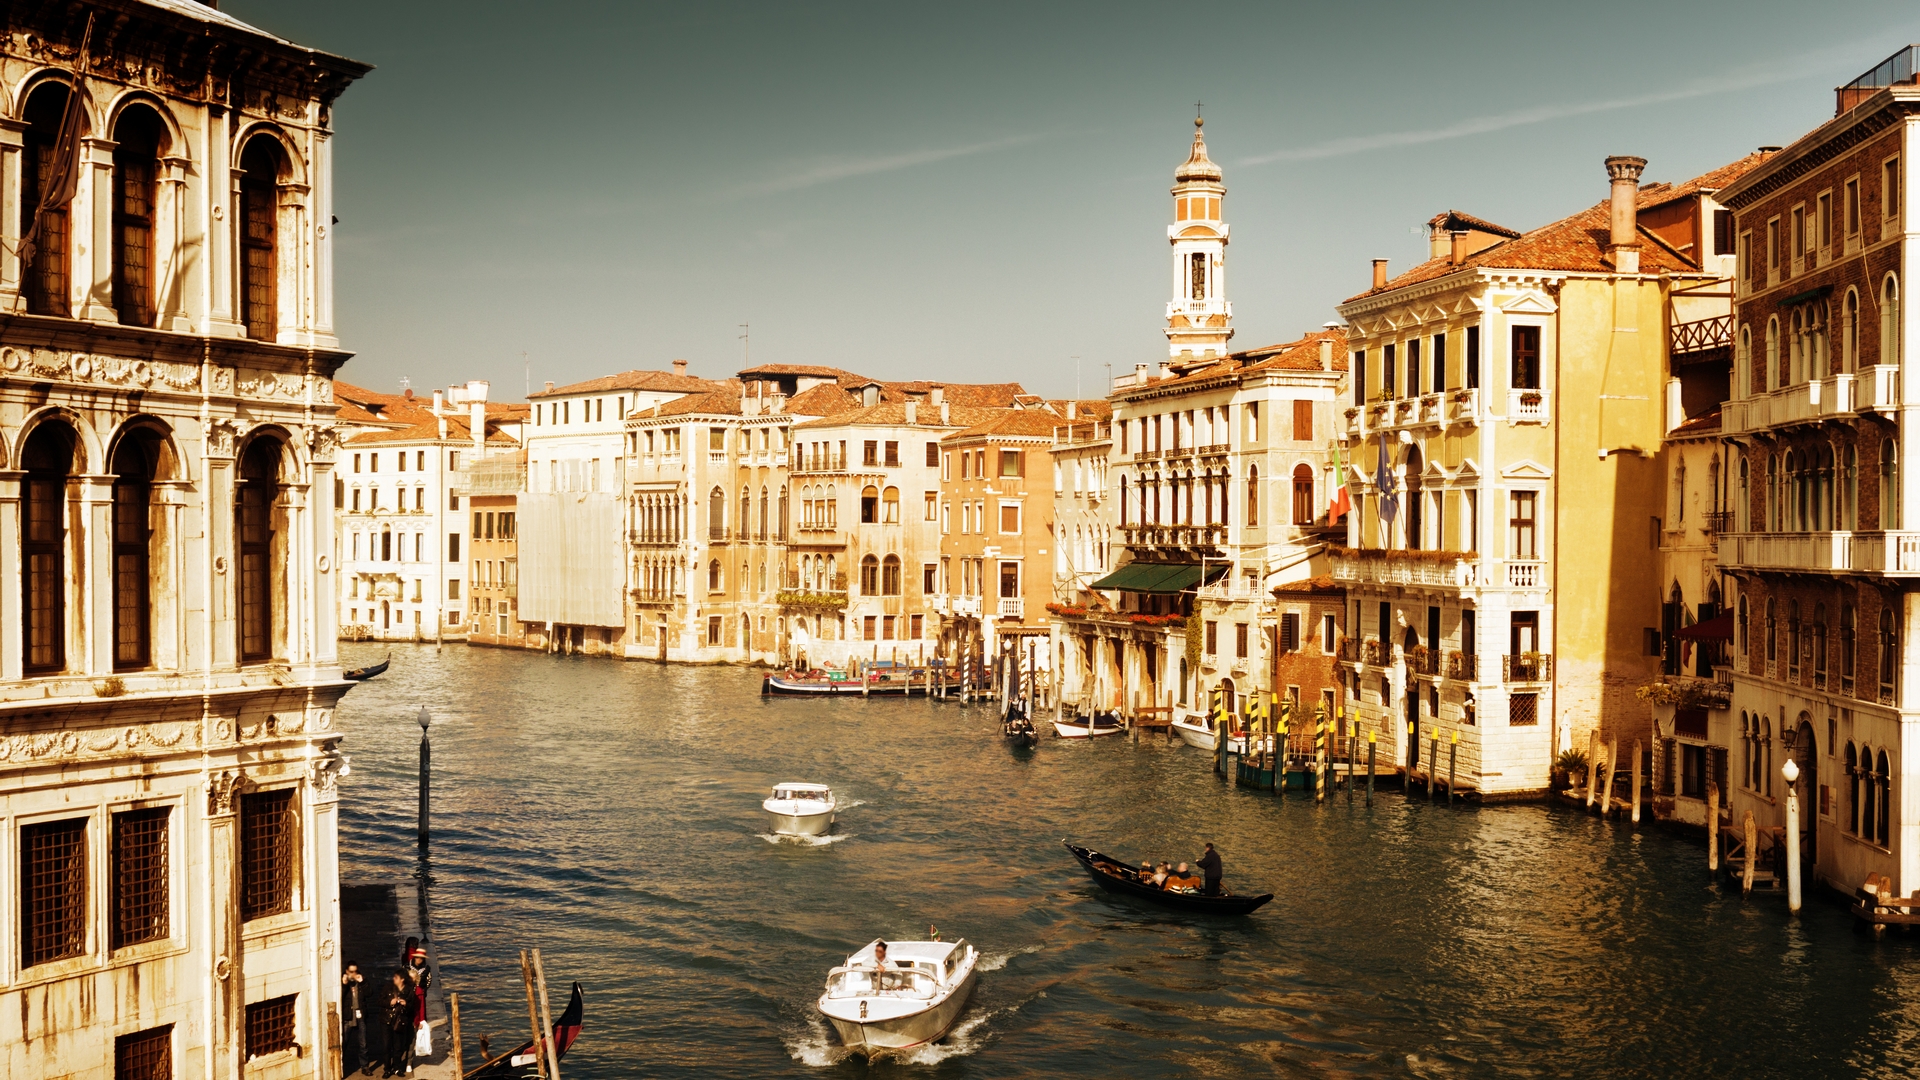 Скачать обои бесплатно Венеция, Сделано Человеком картинка на рабочий стол ПК